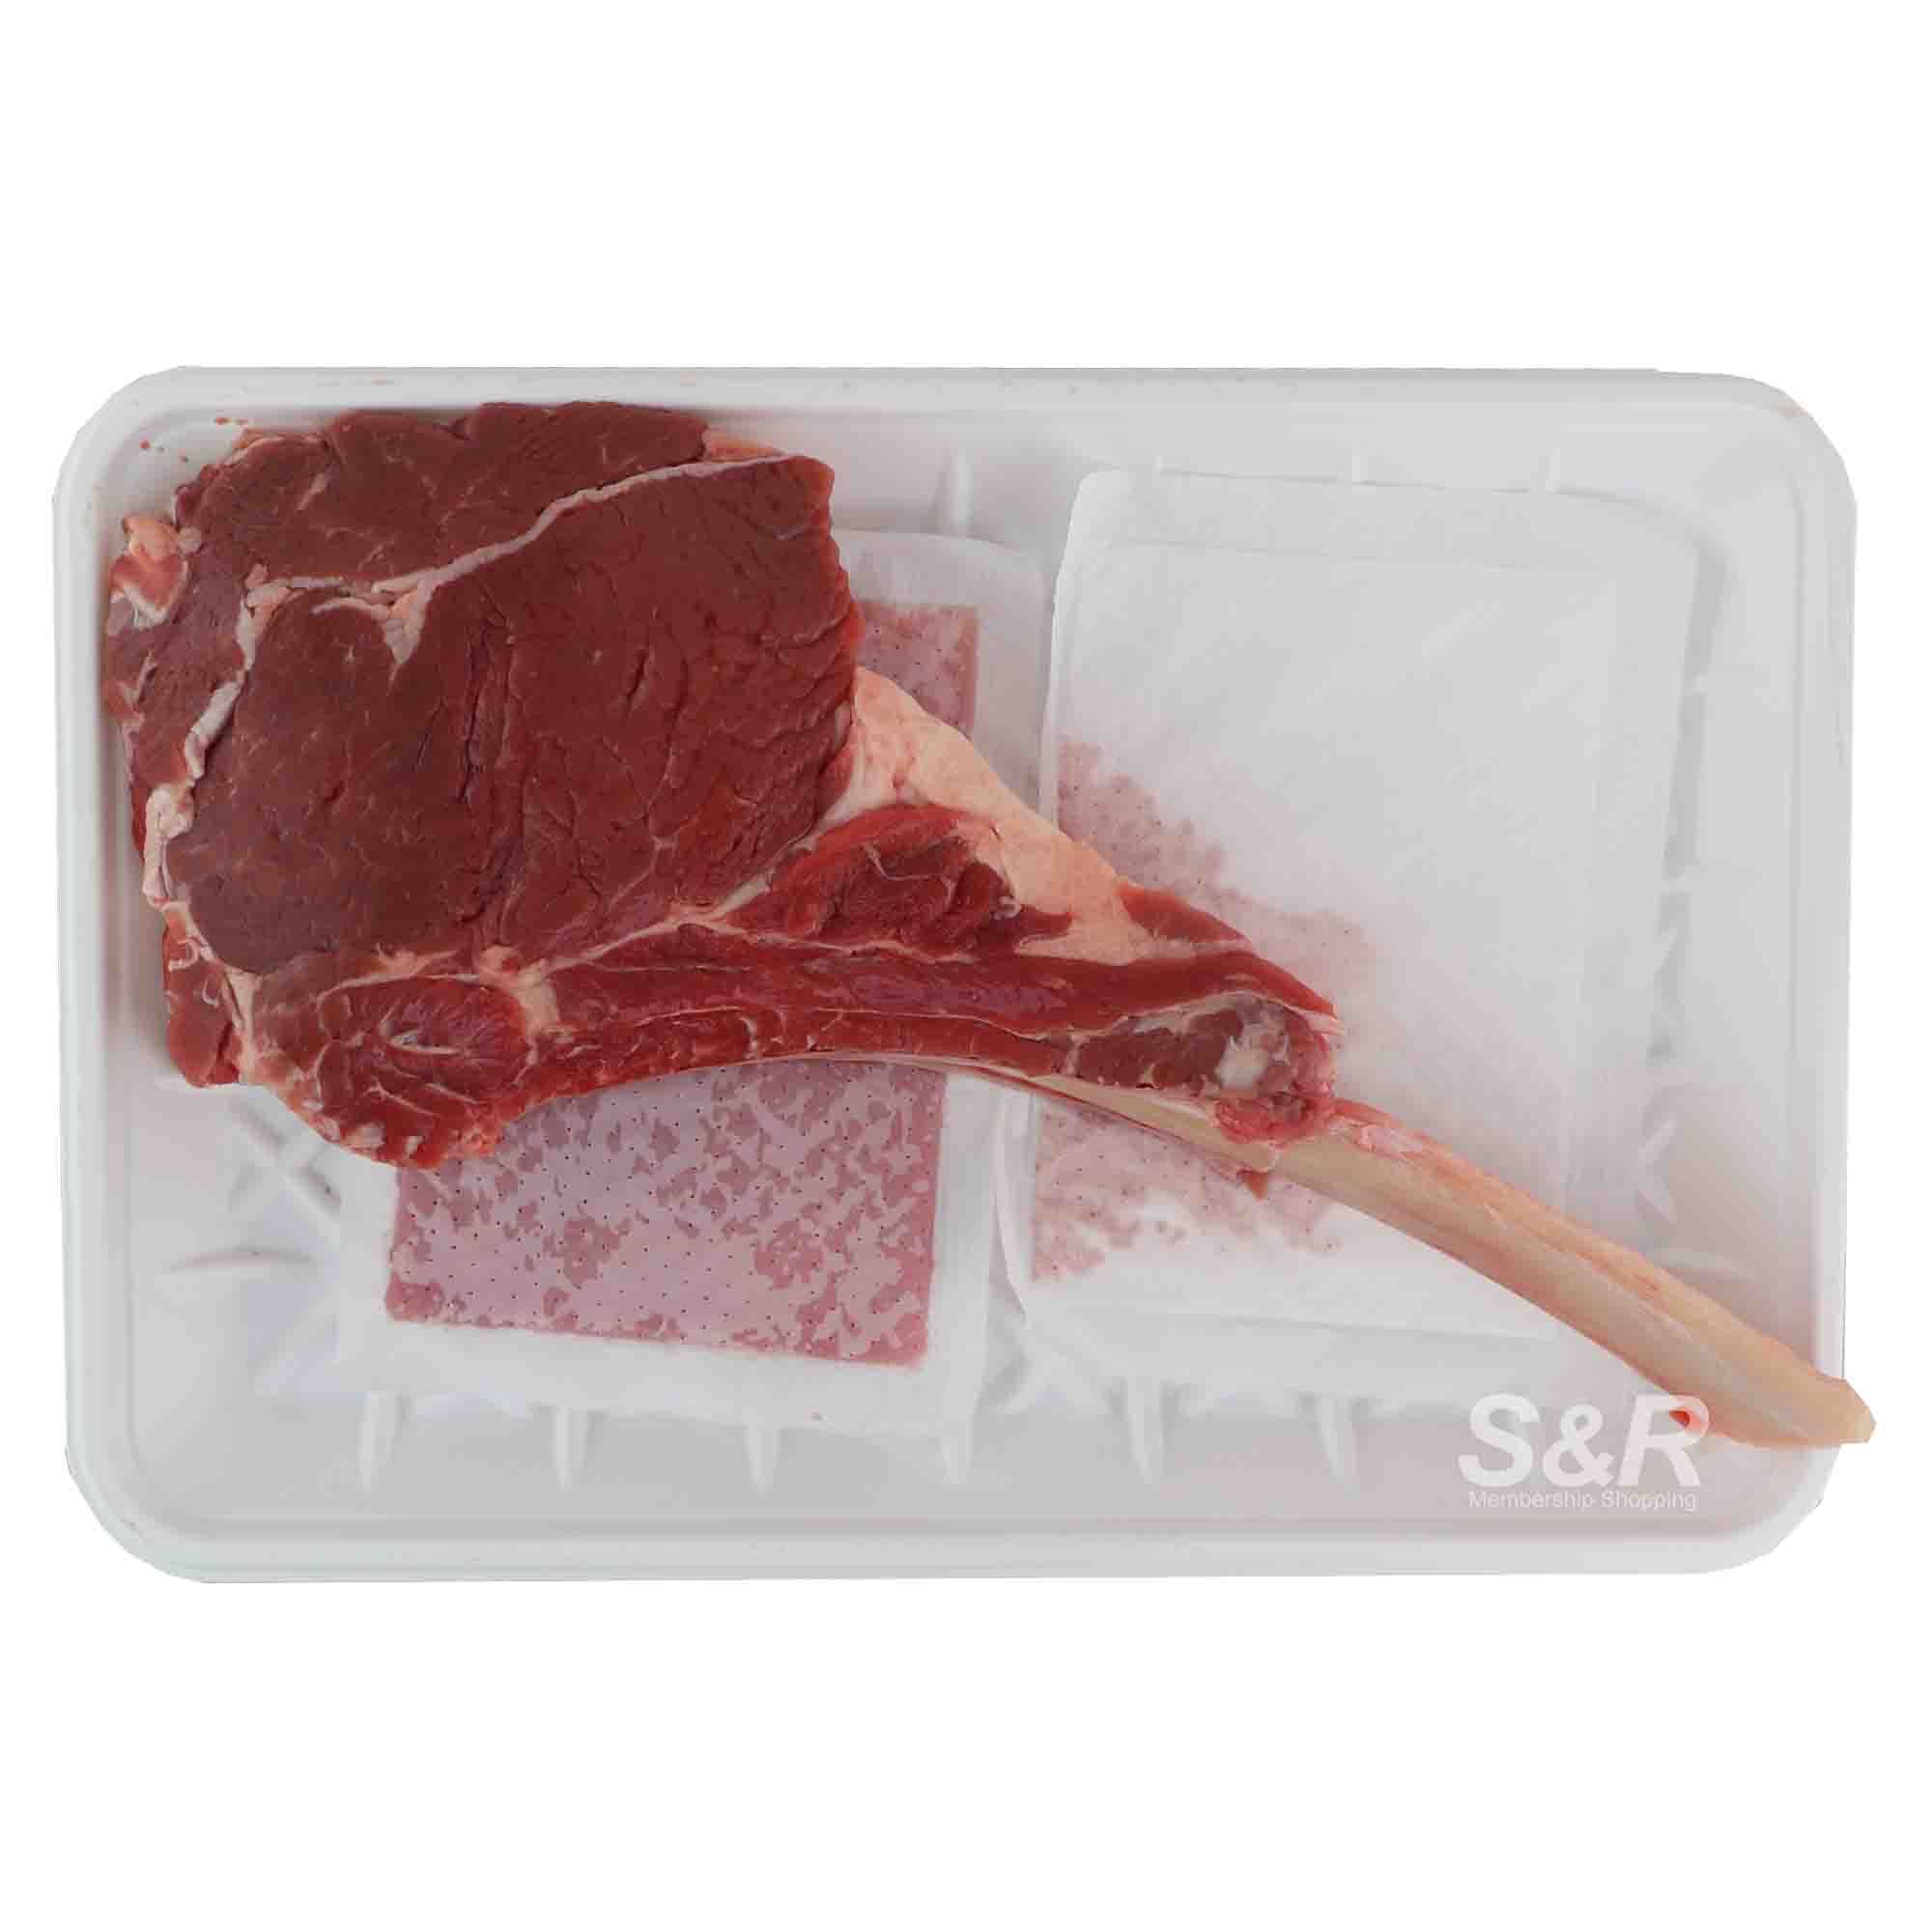 S&R Beef Tomahawk Steak approx. 2kg